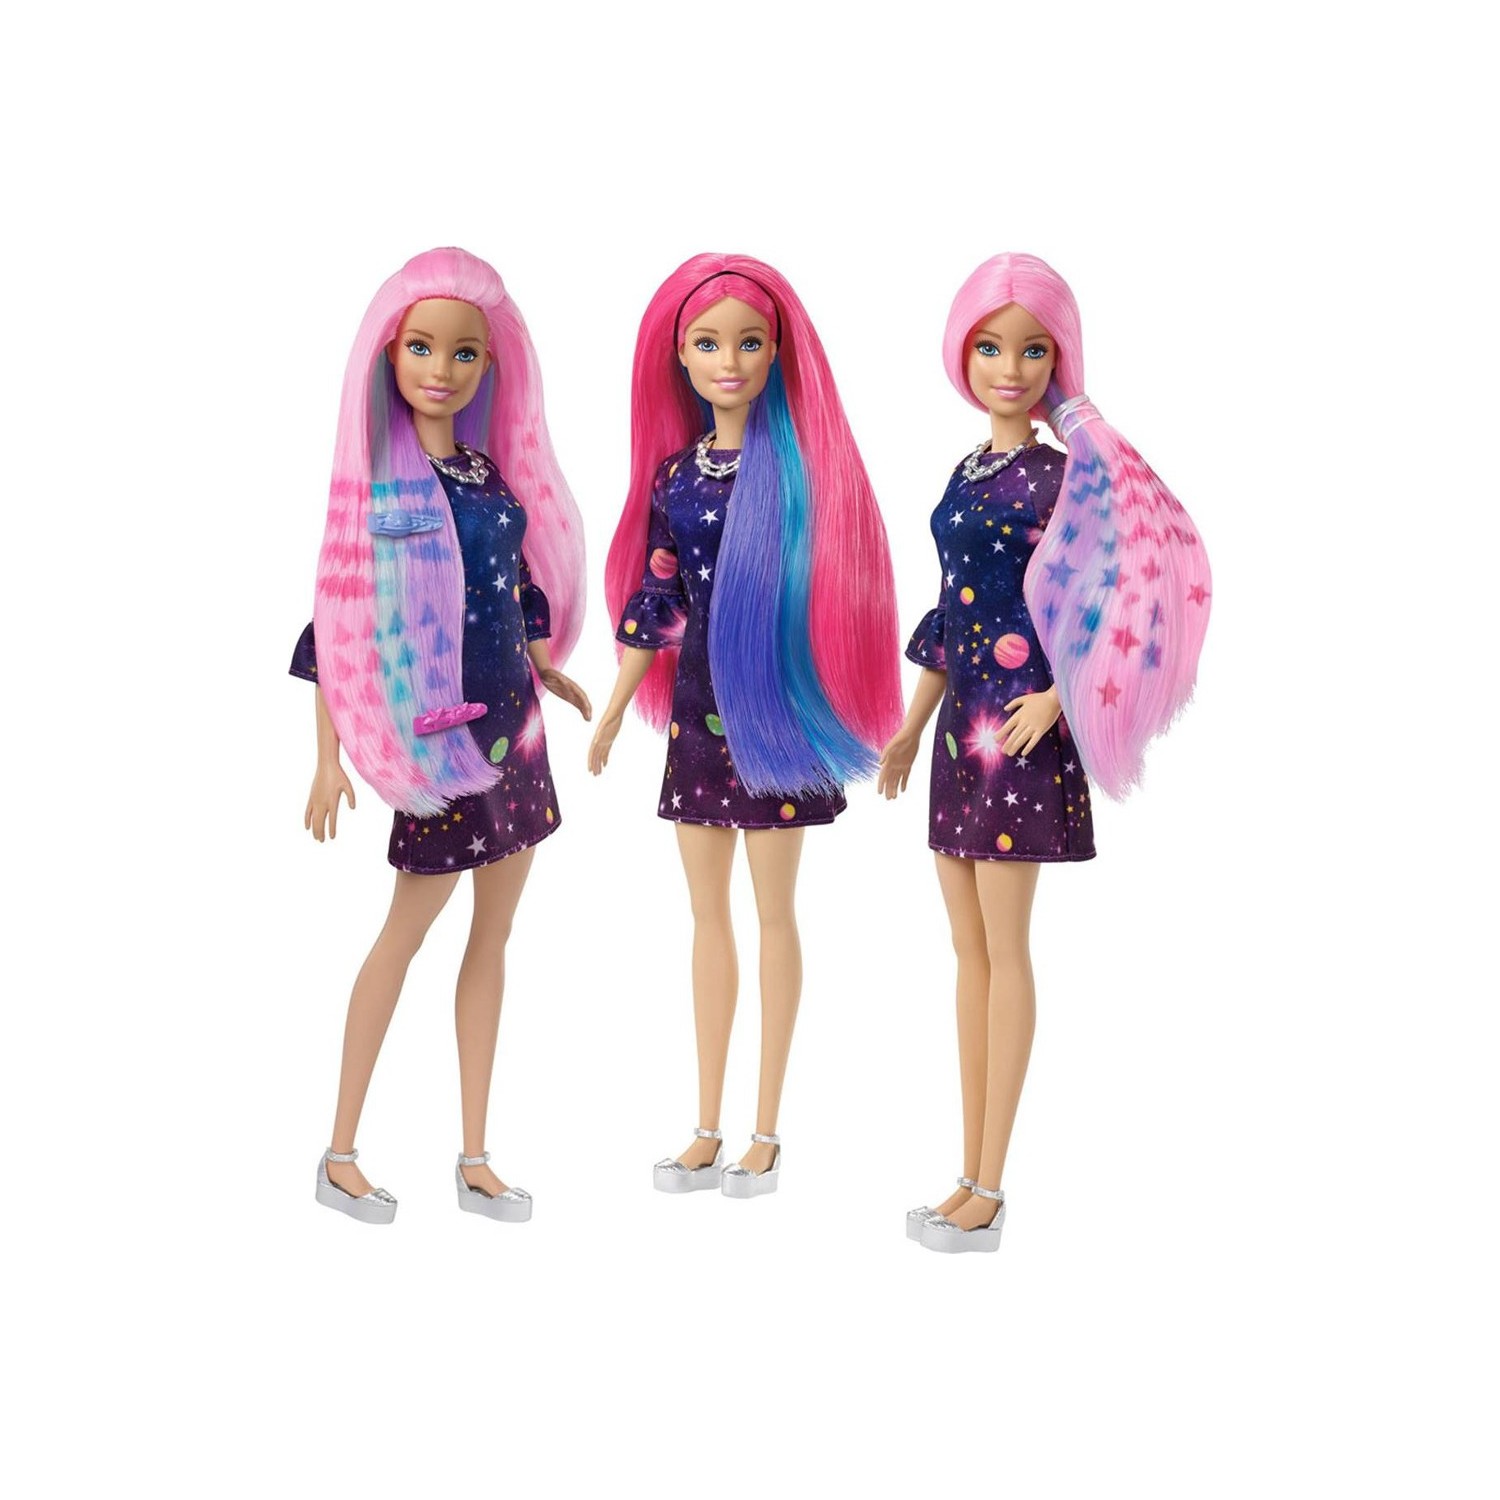 Кукла Barbie с цветными волосами барби кукла для вечеринки кожаная одежда юбка аксессуары для 11 5 дюймовых кукол барби и кукол bjd игрушки для девочек бесплатно высокие кабл